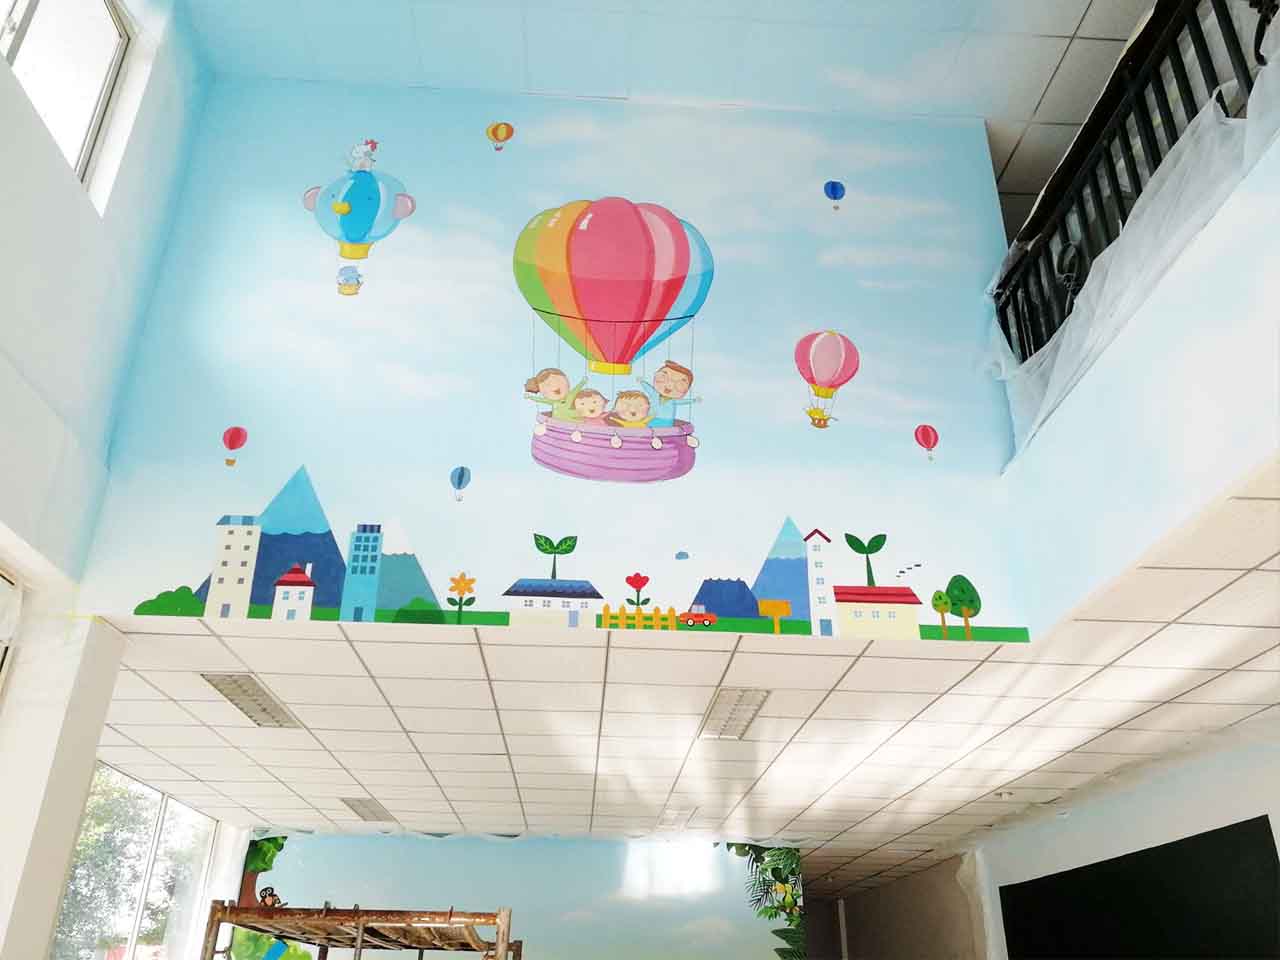 幼儿校园动物园游乐场卡通梦幻天空热气球墙绘壁画彩绘涂鸦手绘成都澜泉文化